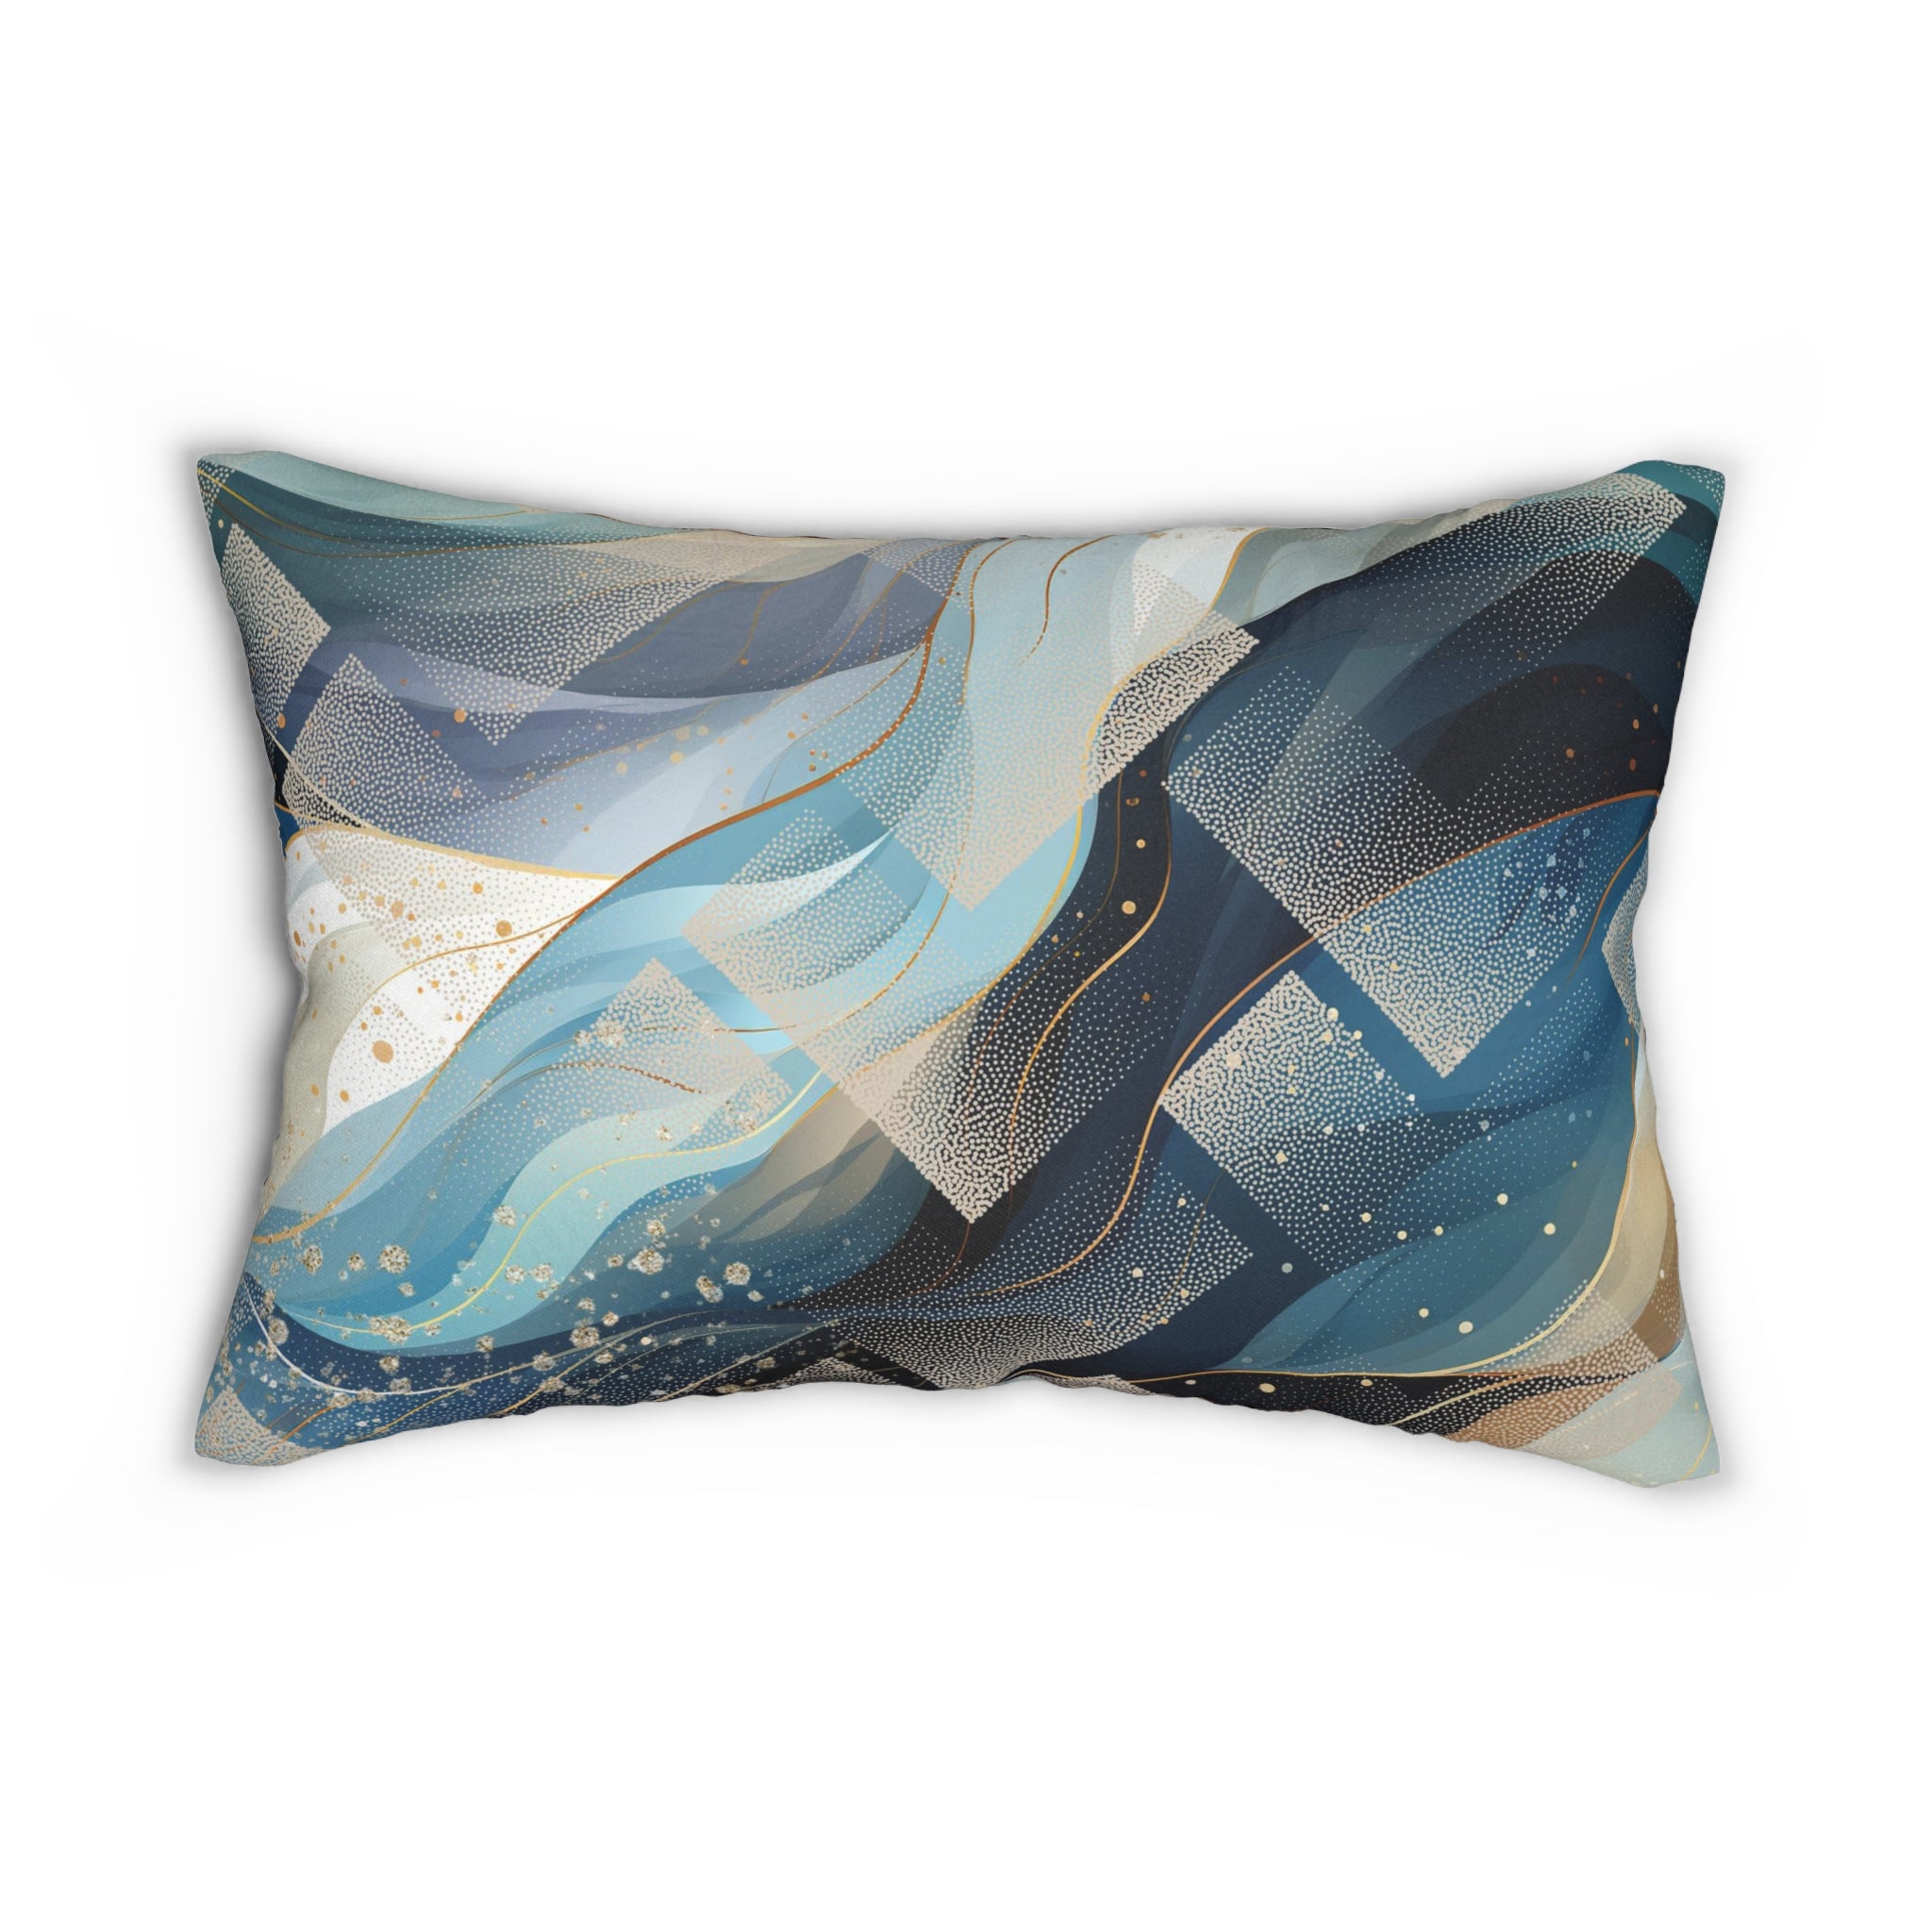 Abstract Lumbar Pillow | Navy Mint Blue, Beige Waves